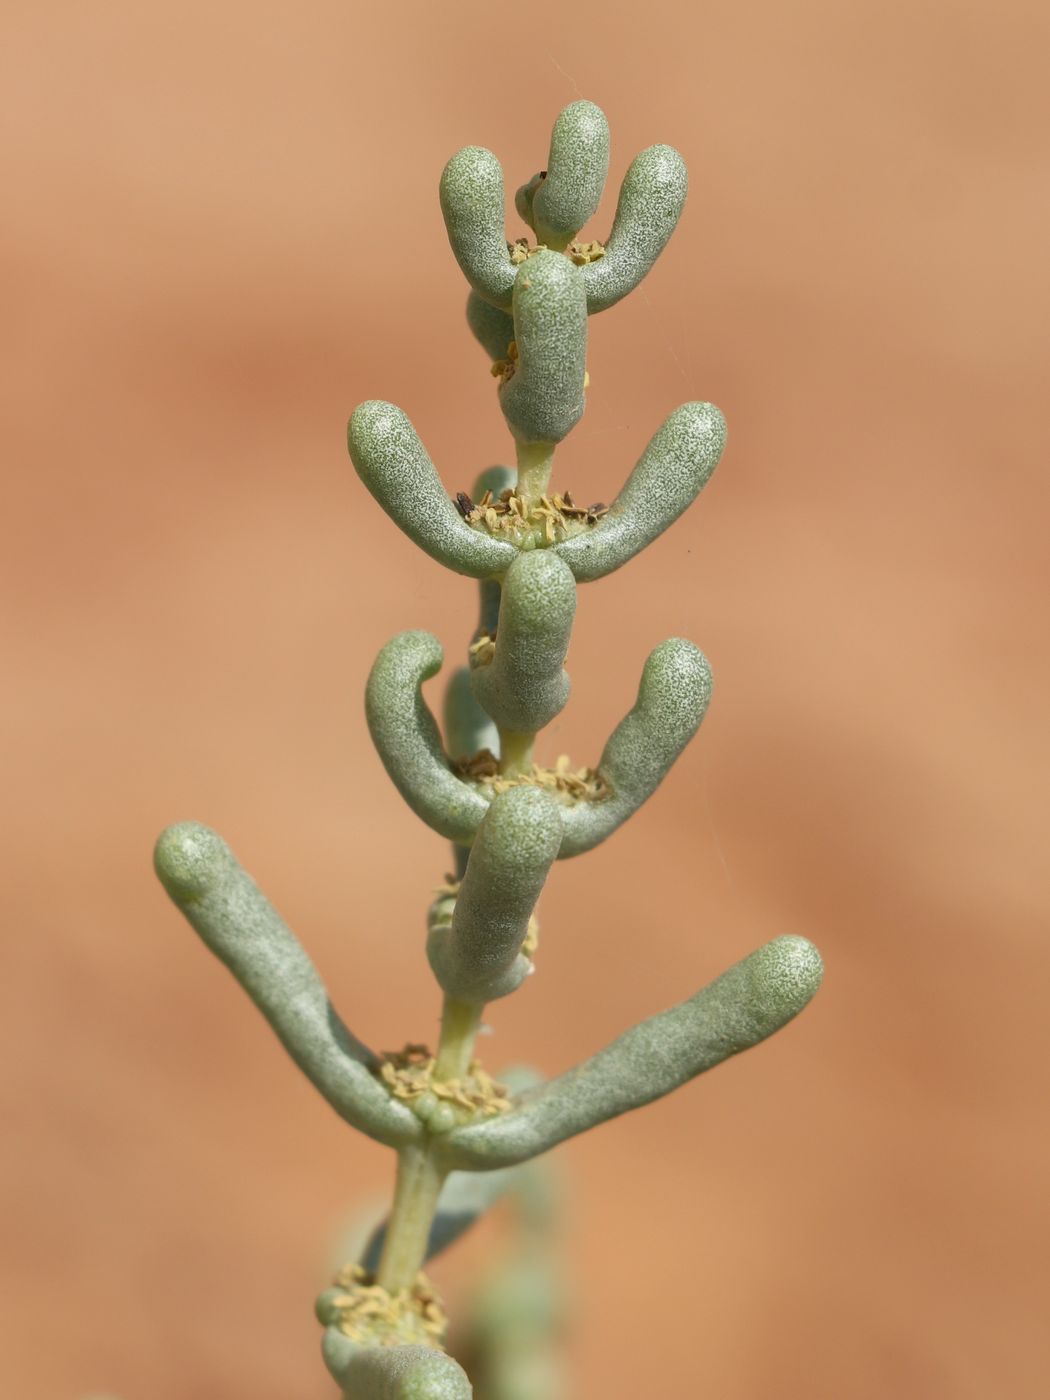 Image of Seidlitzia rosmarinus specimen.